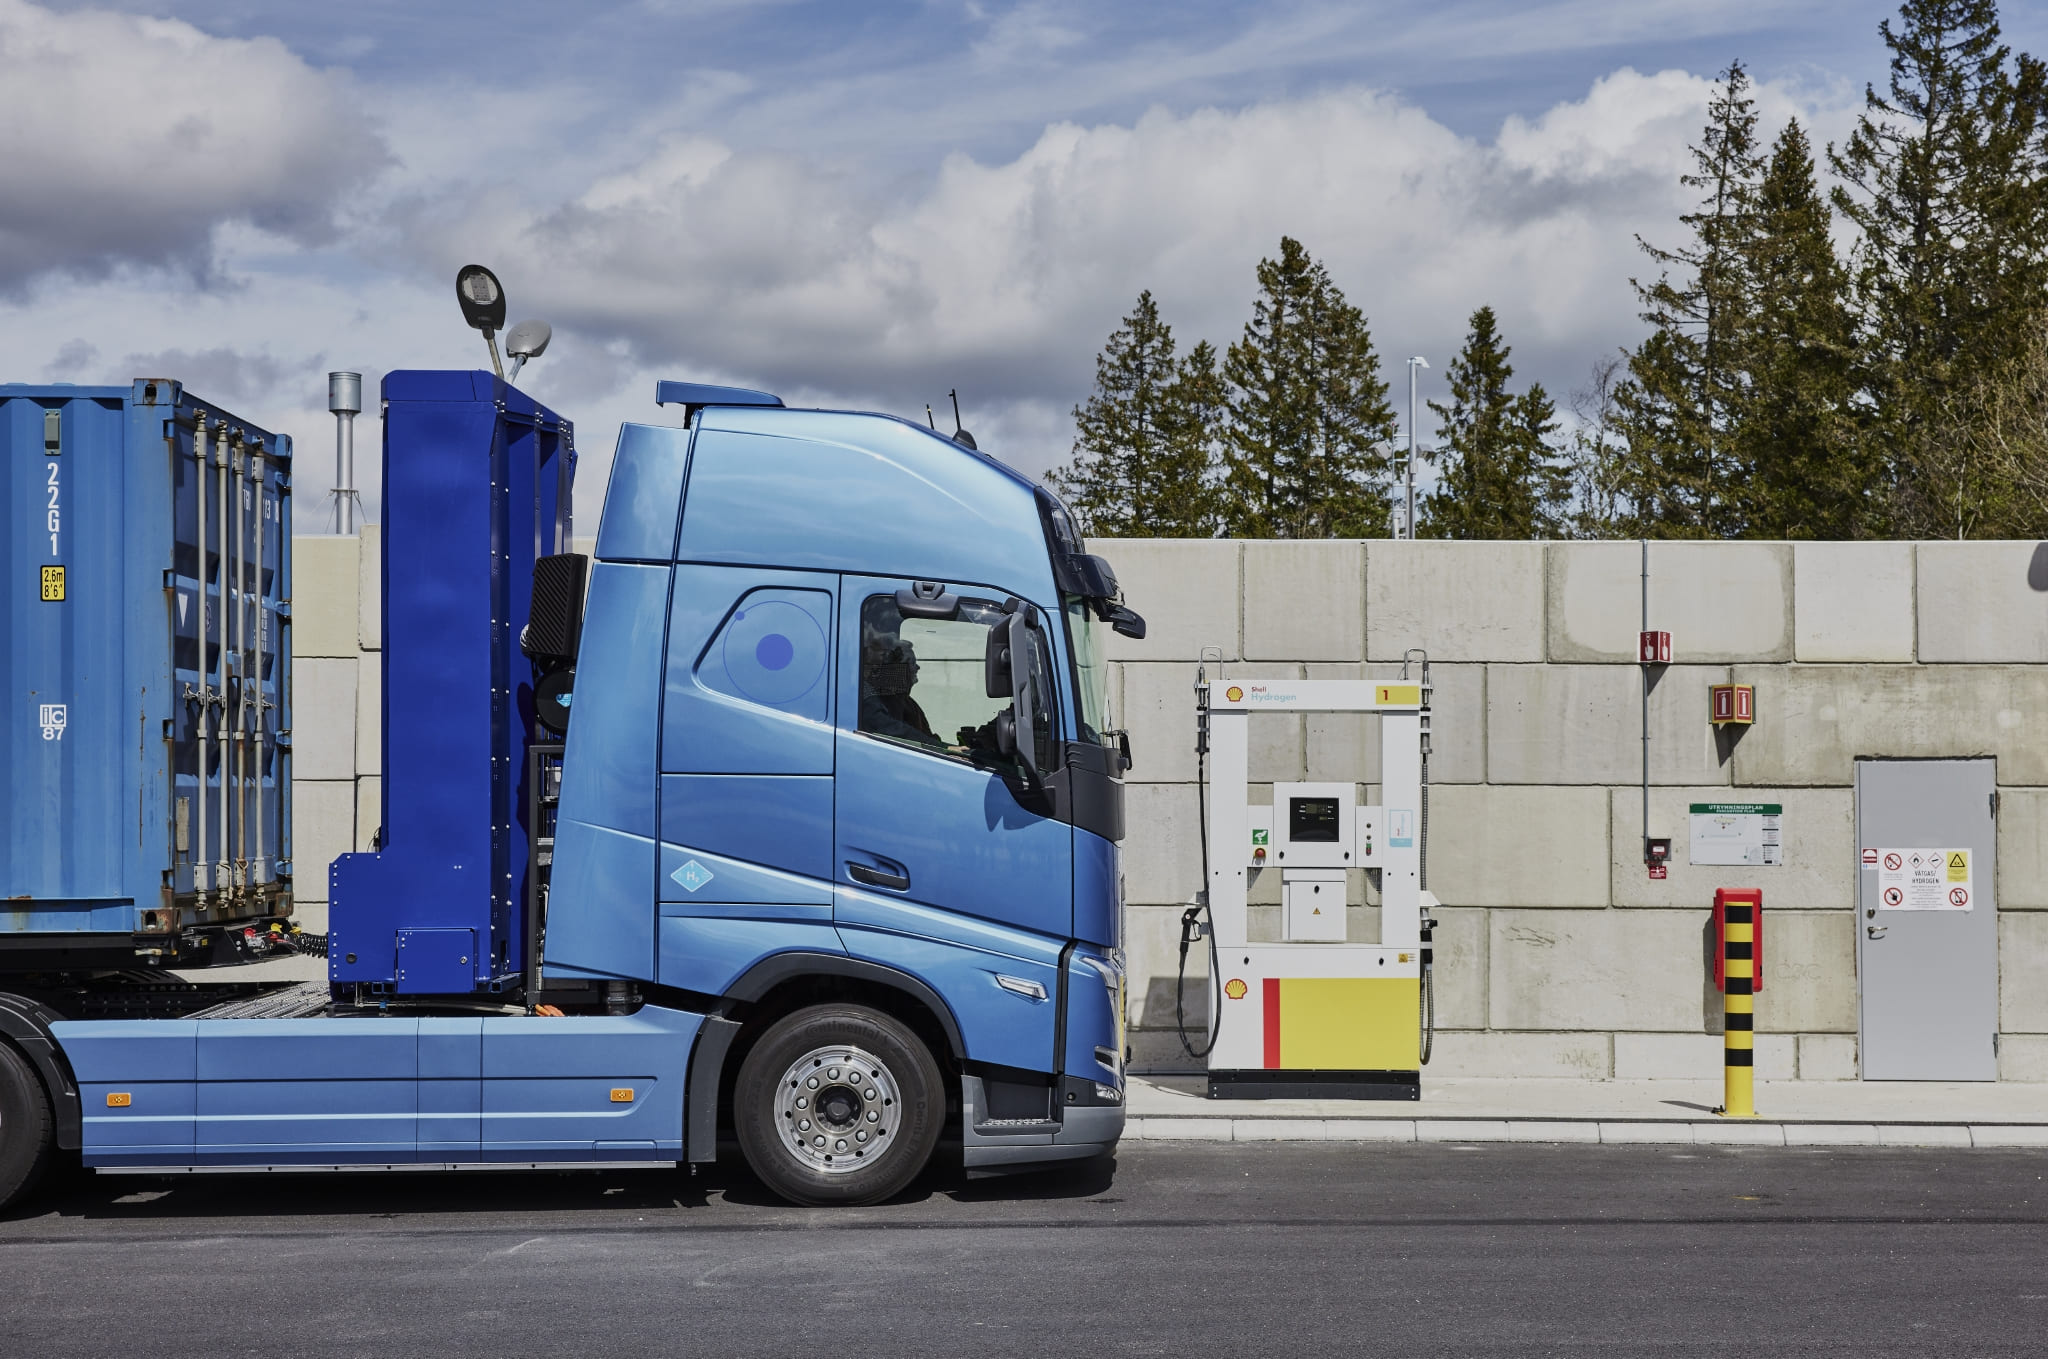 El camión eléctrico alimentado por hidrógeno puede ser una alternativa cero emisiones para el transporte pesado a larga distancia.